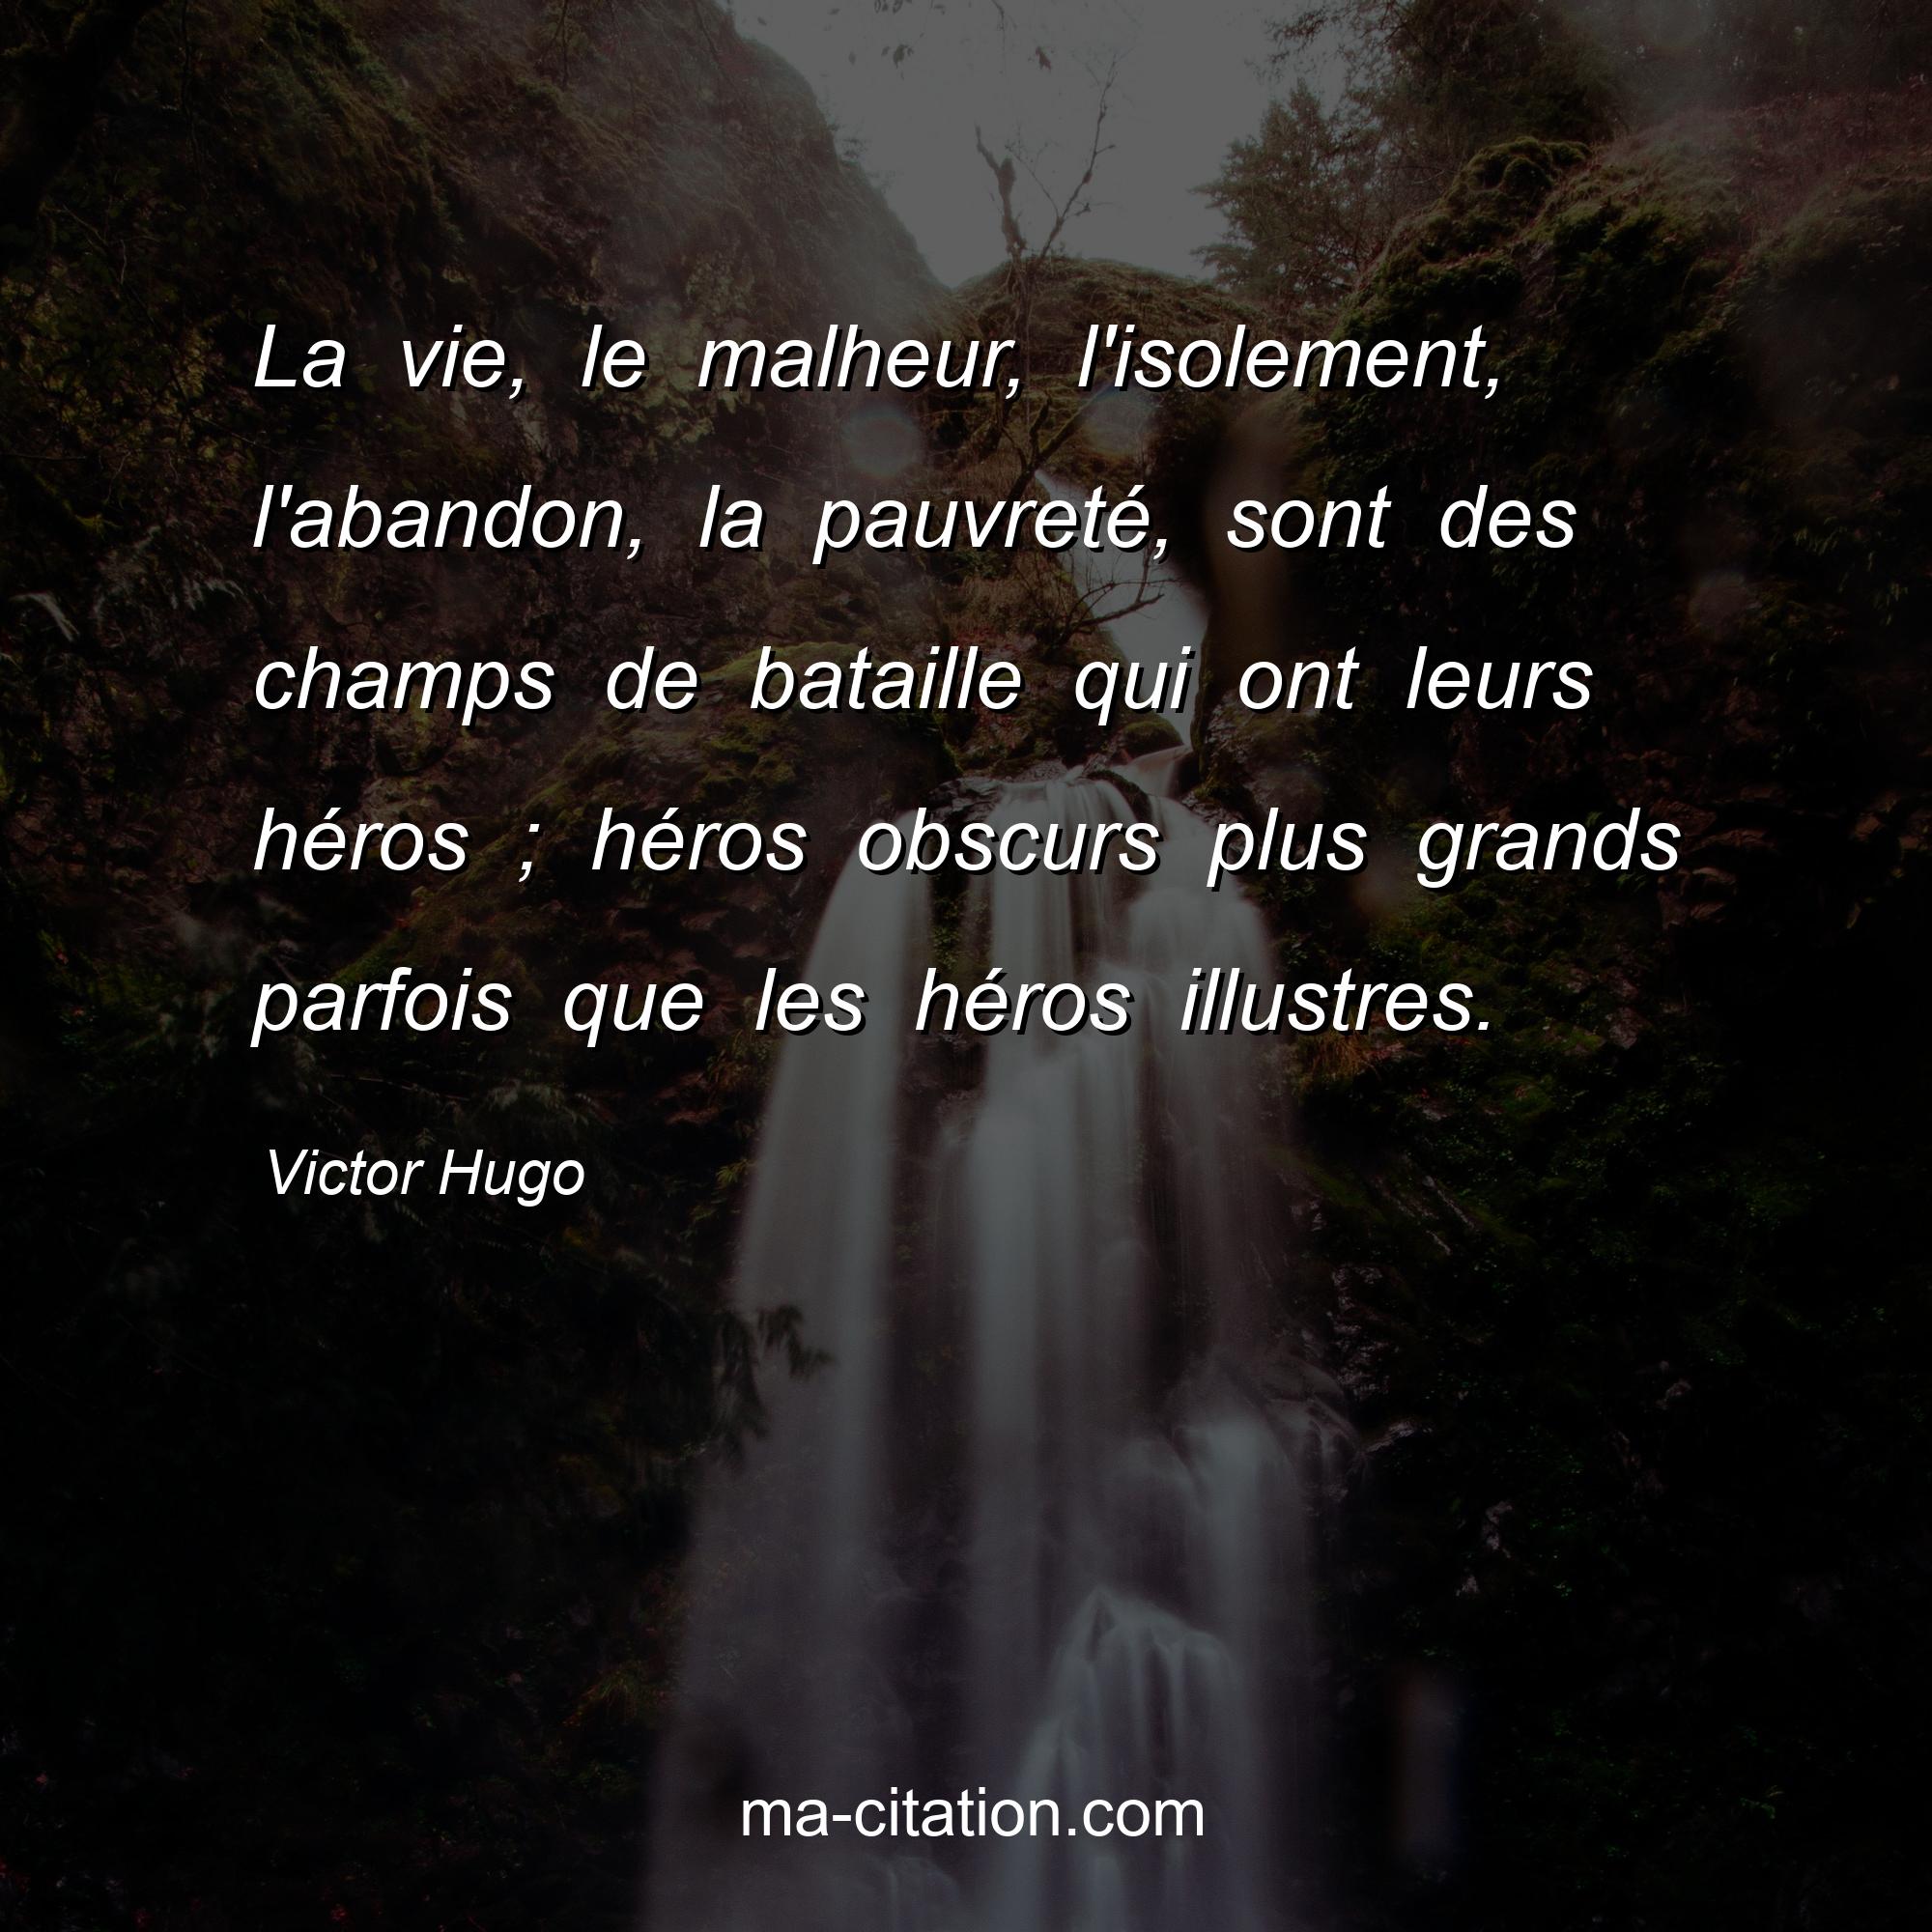 Victor Hugo : La vie, le malheur, l'isolement, l'abandon, la pauvreté, sont des champs de bataille qui ont leurs héros ; héros obscurs plus grands parfois que les héros illustres.